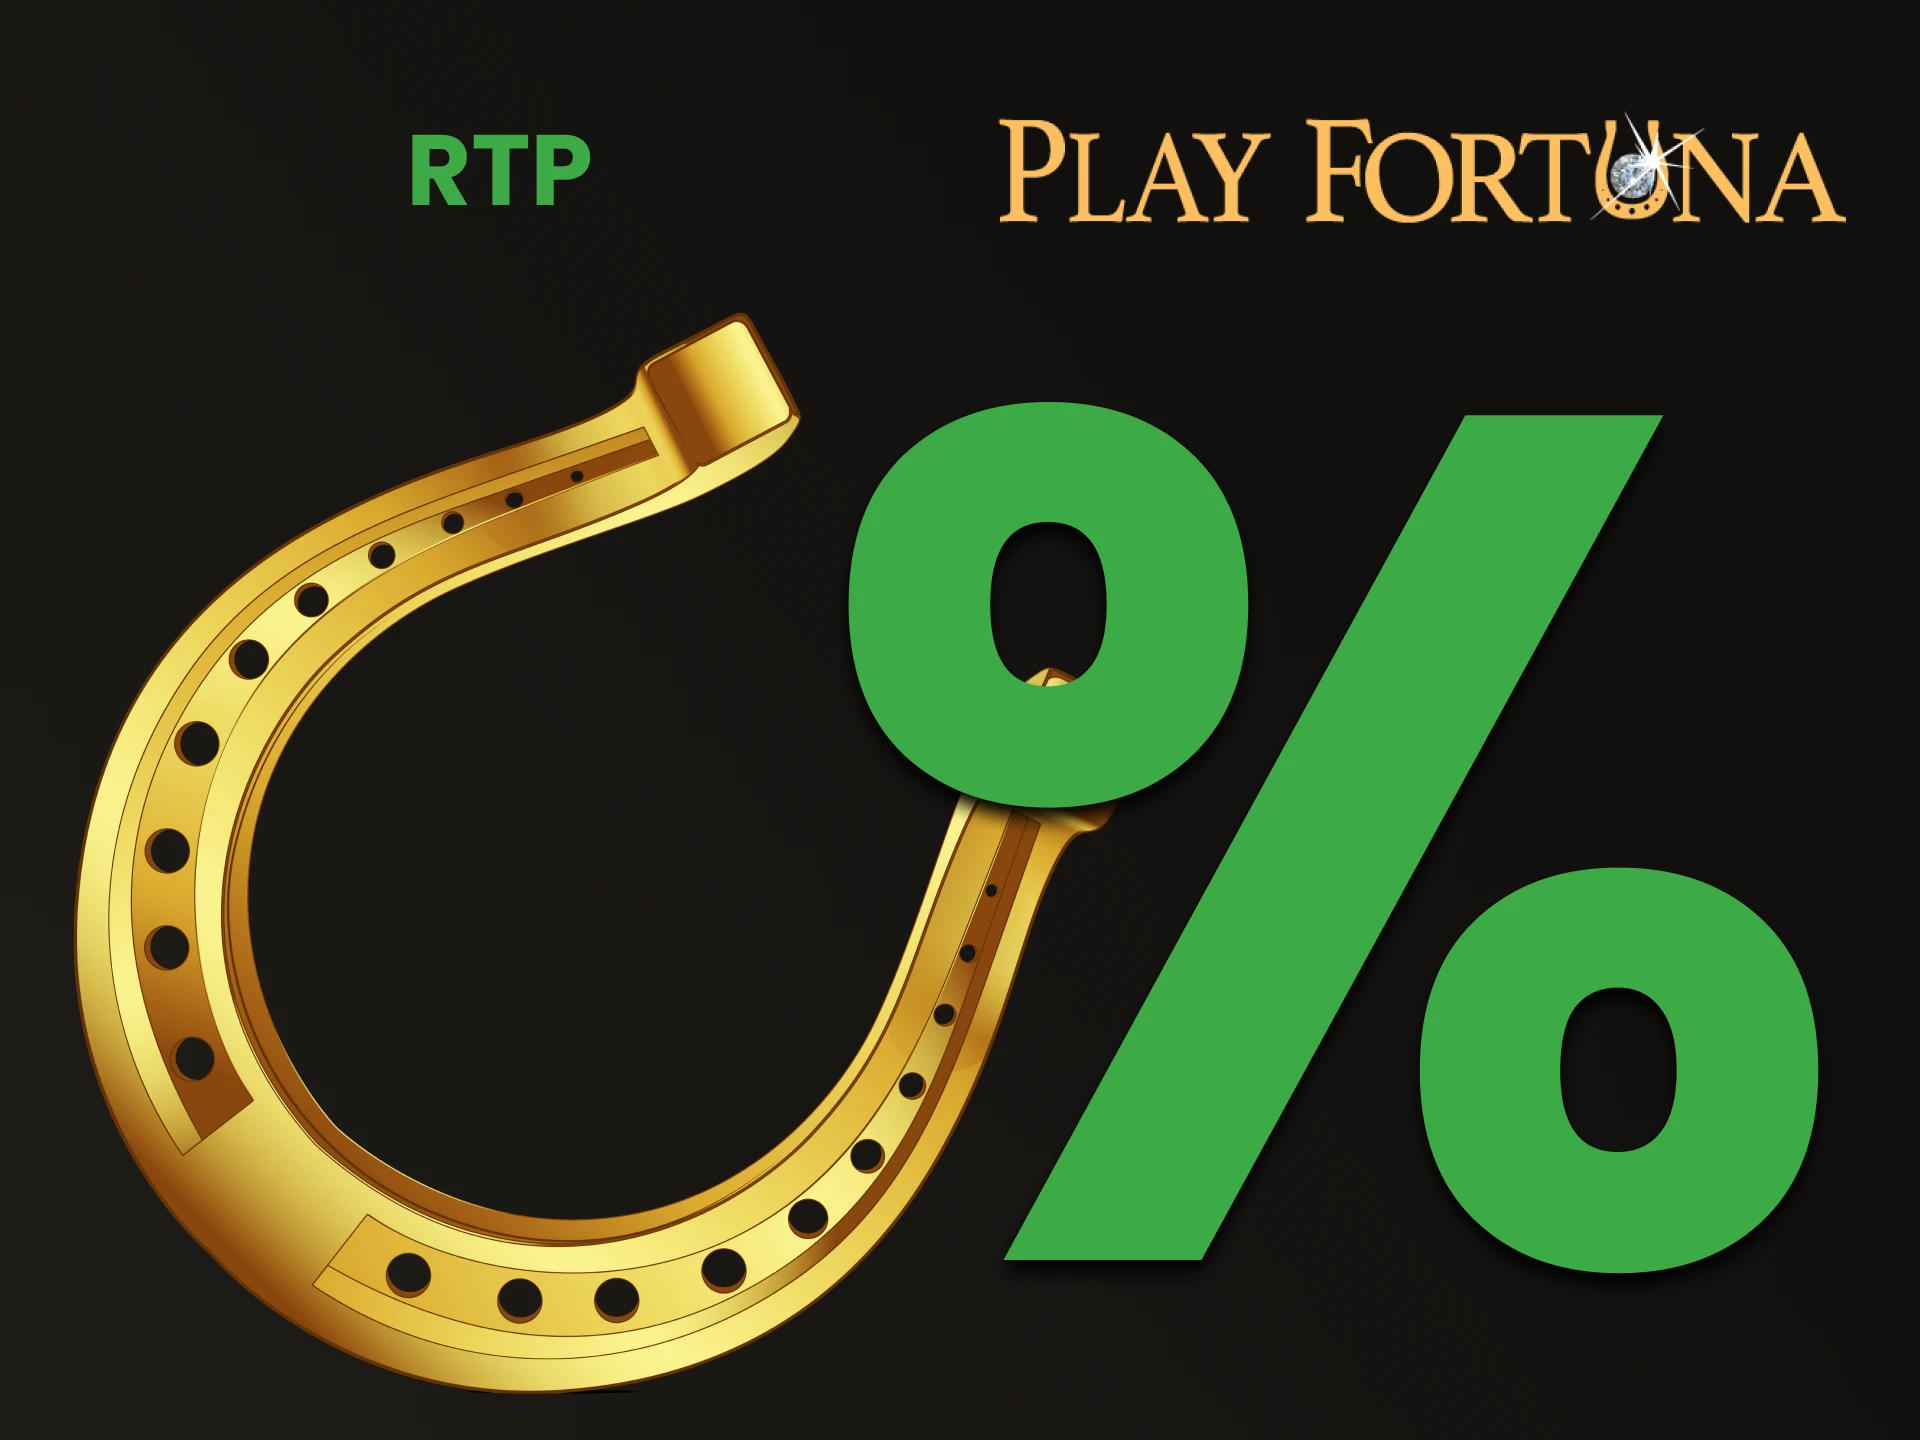 Descubra qual porcentagem você tem para ganhar nas slots do Play Fortuna.